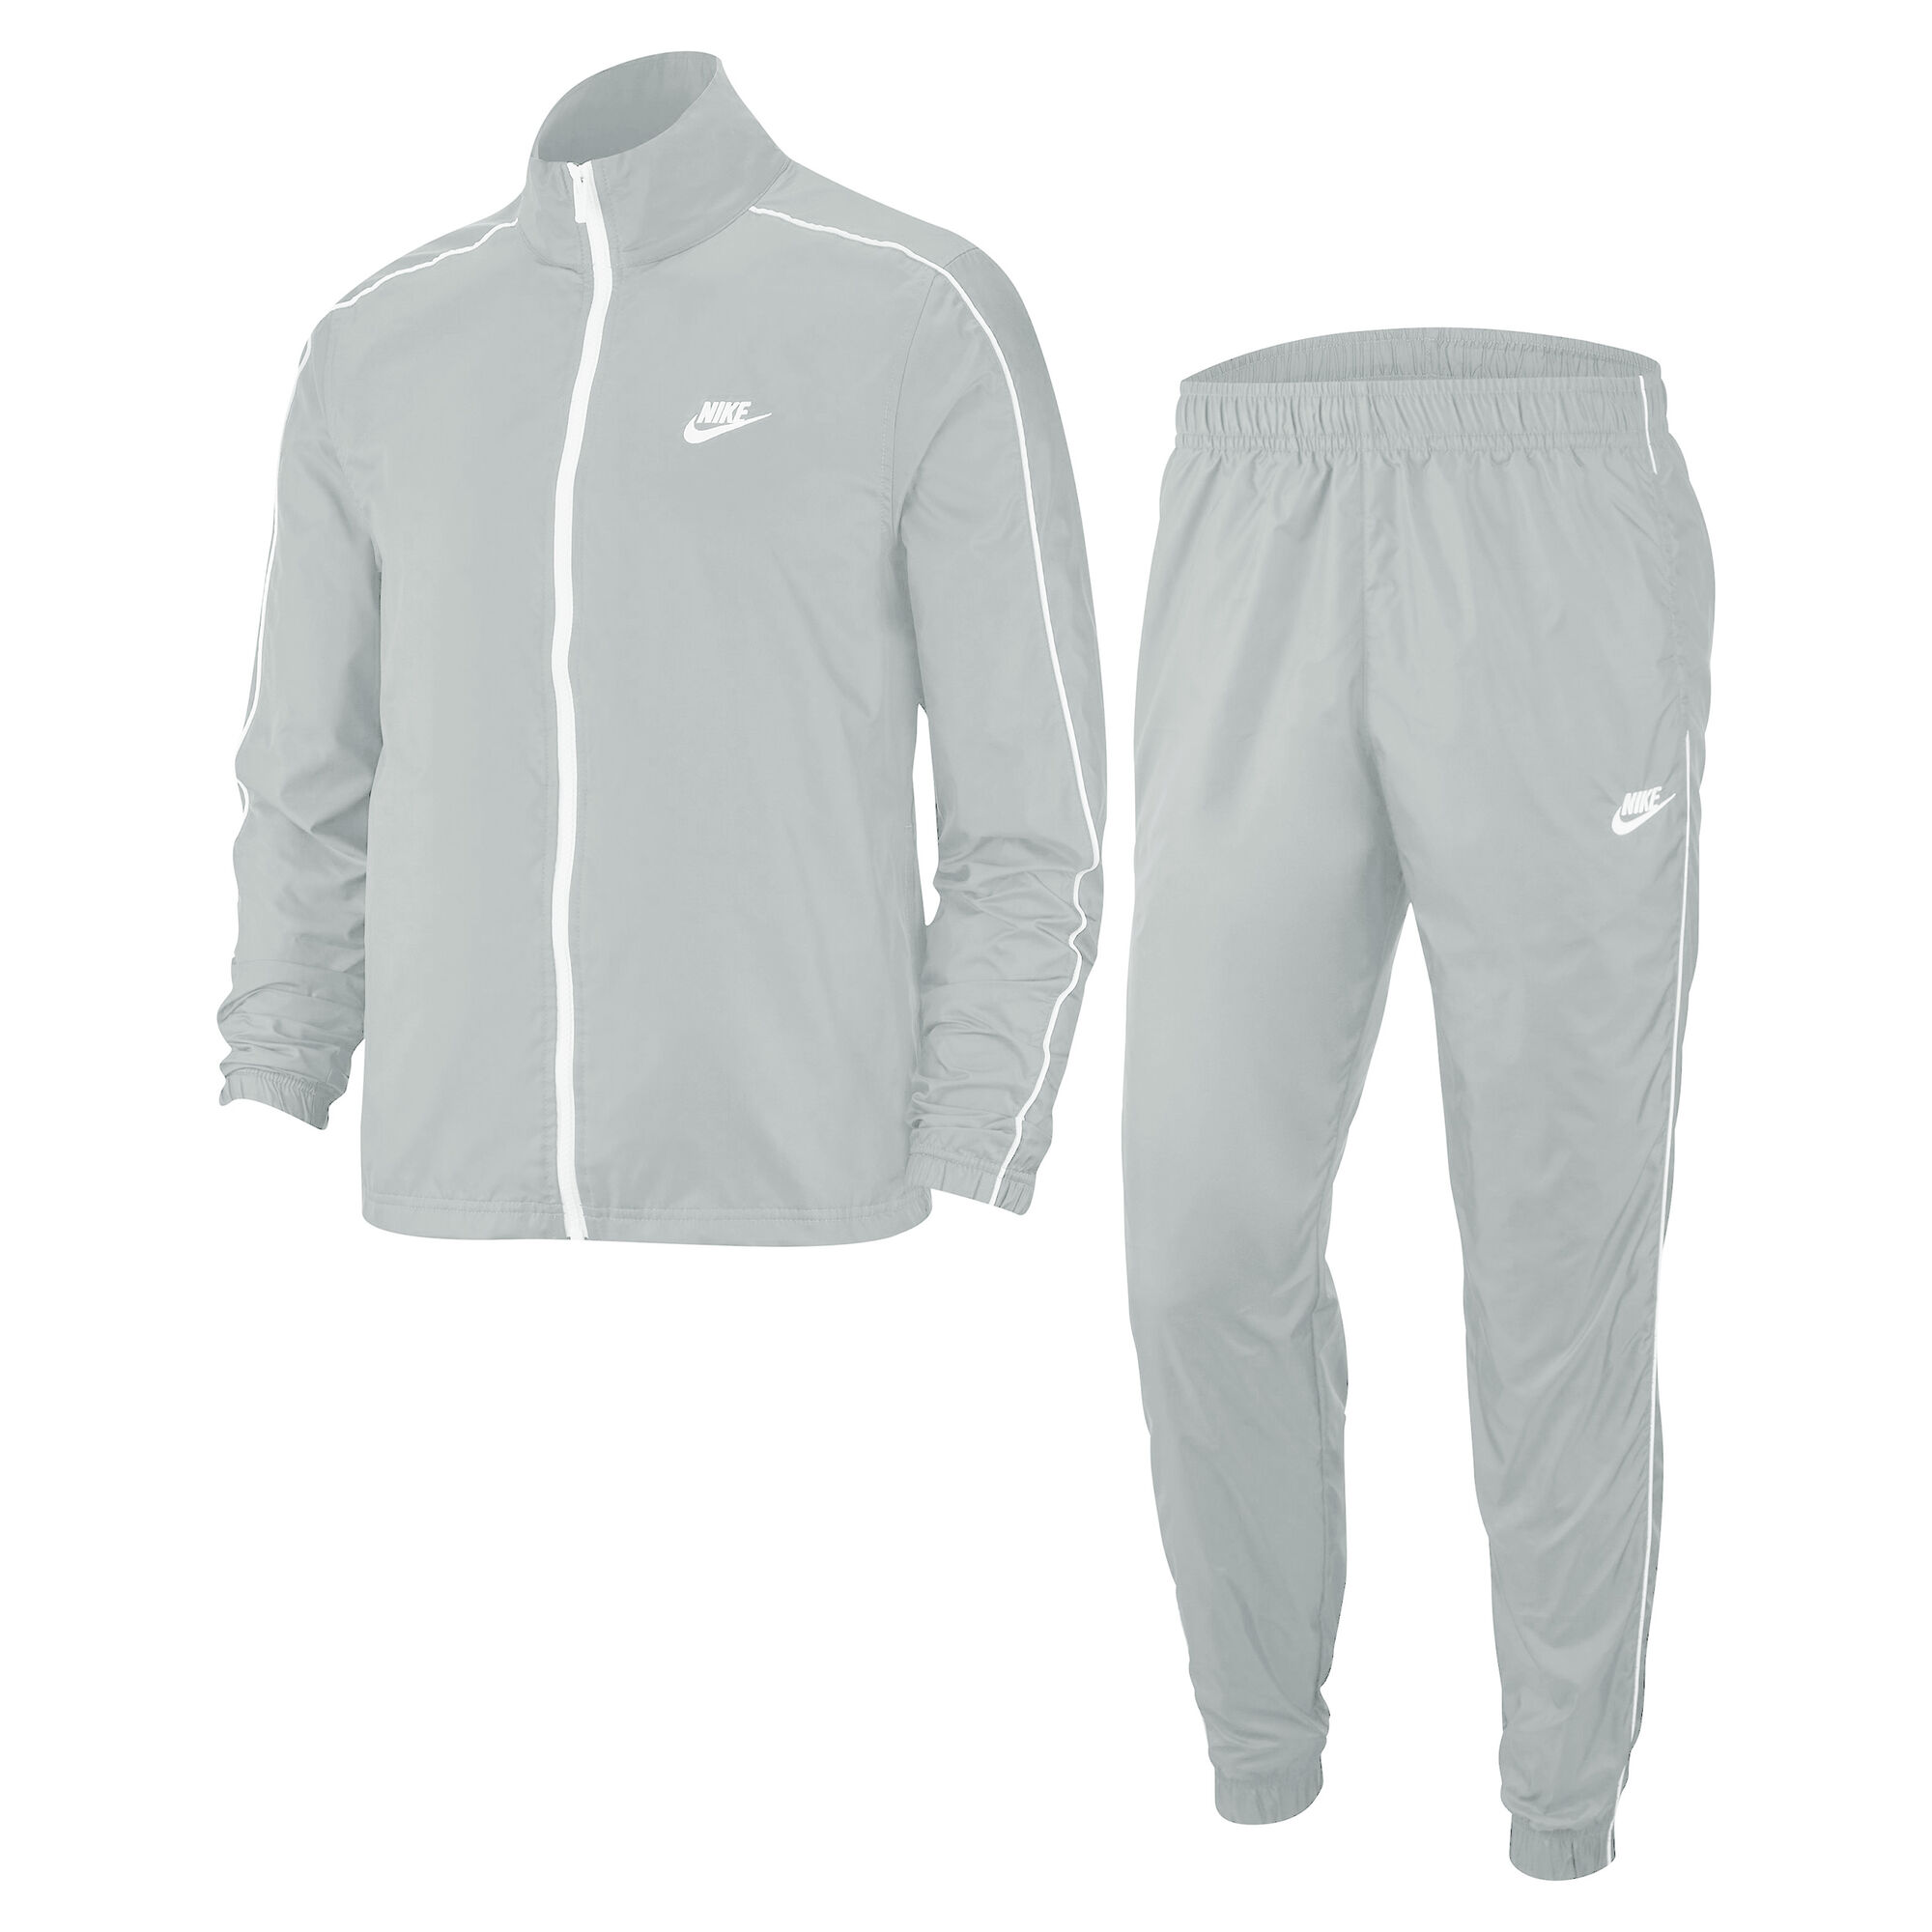 Sportswear Woven Heren - Grijs, Wit kopen | Tennis-Point